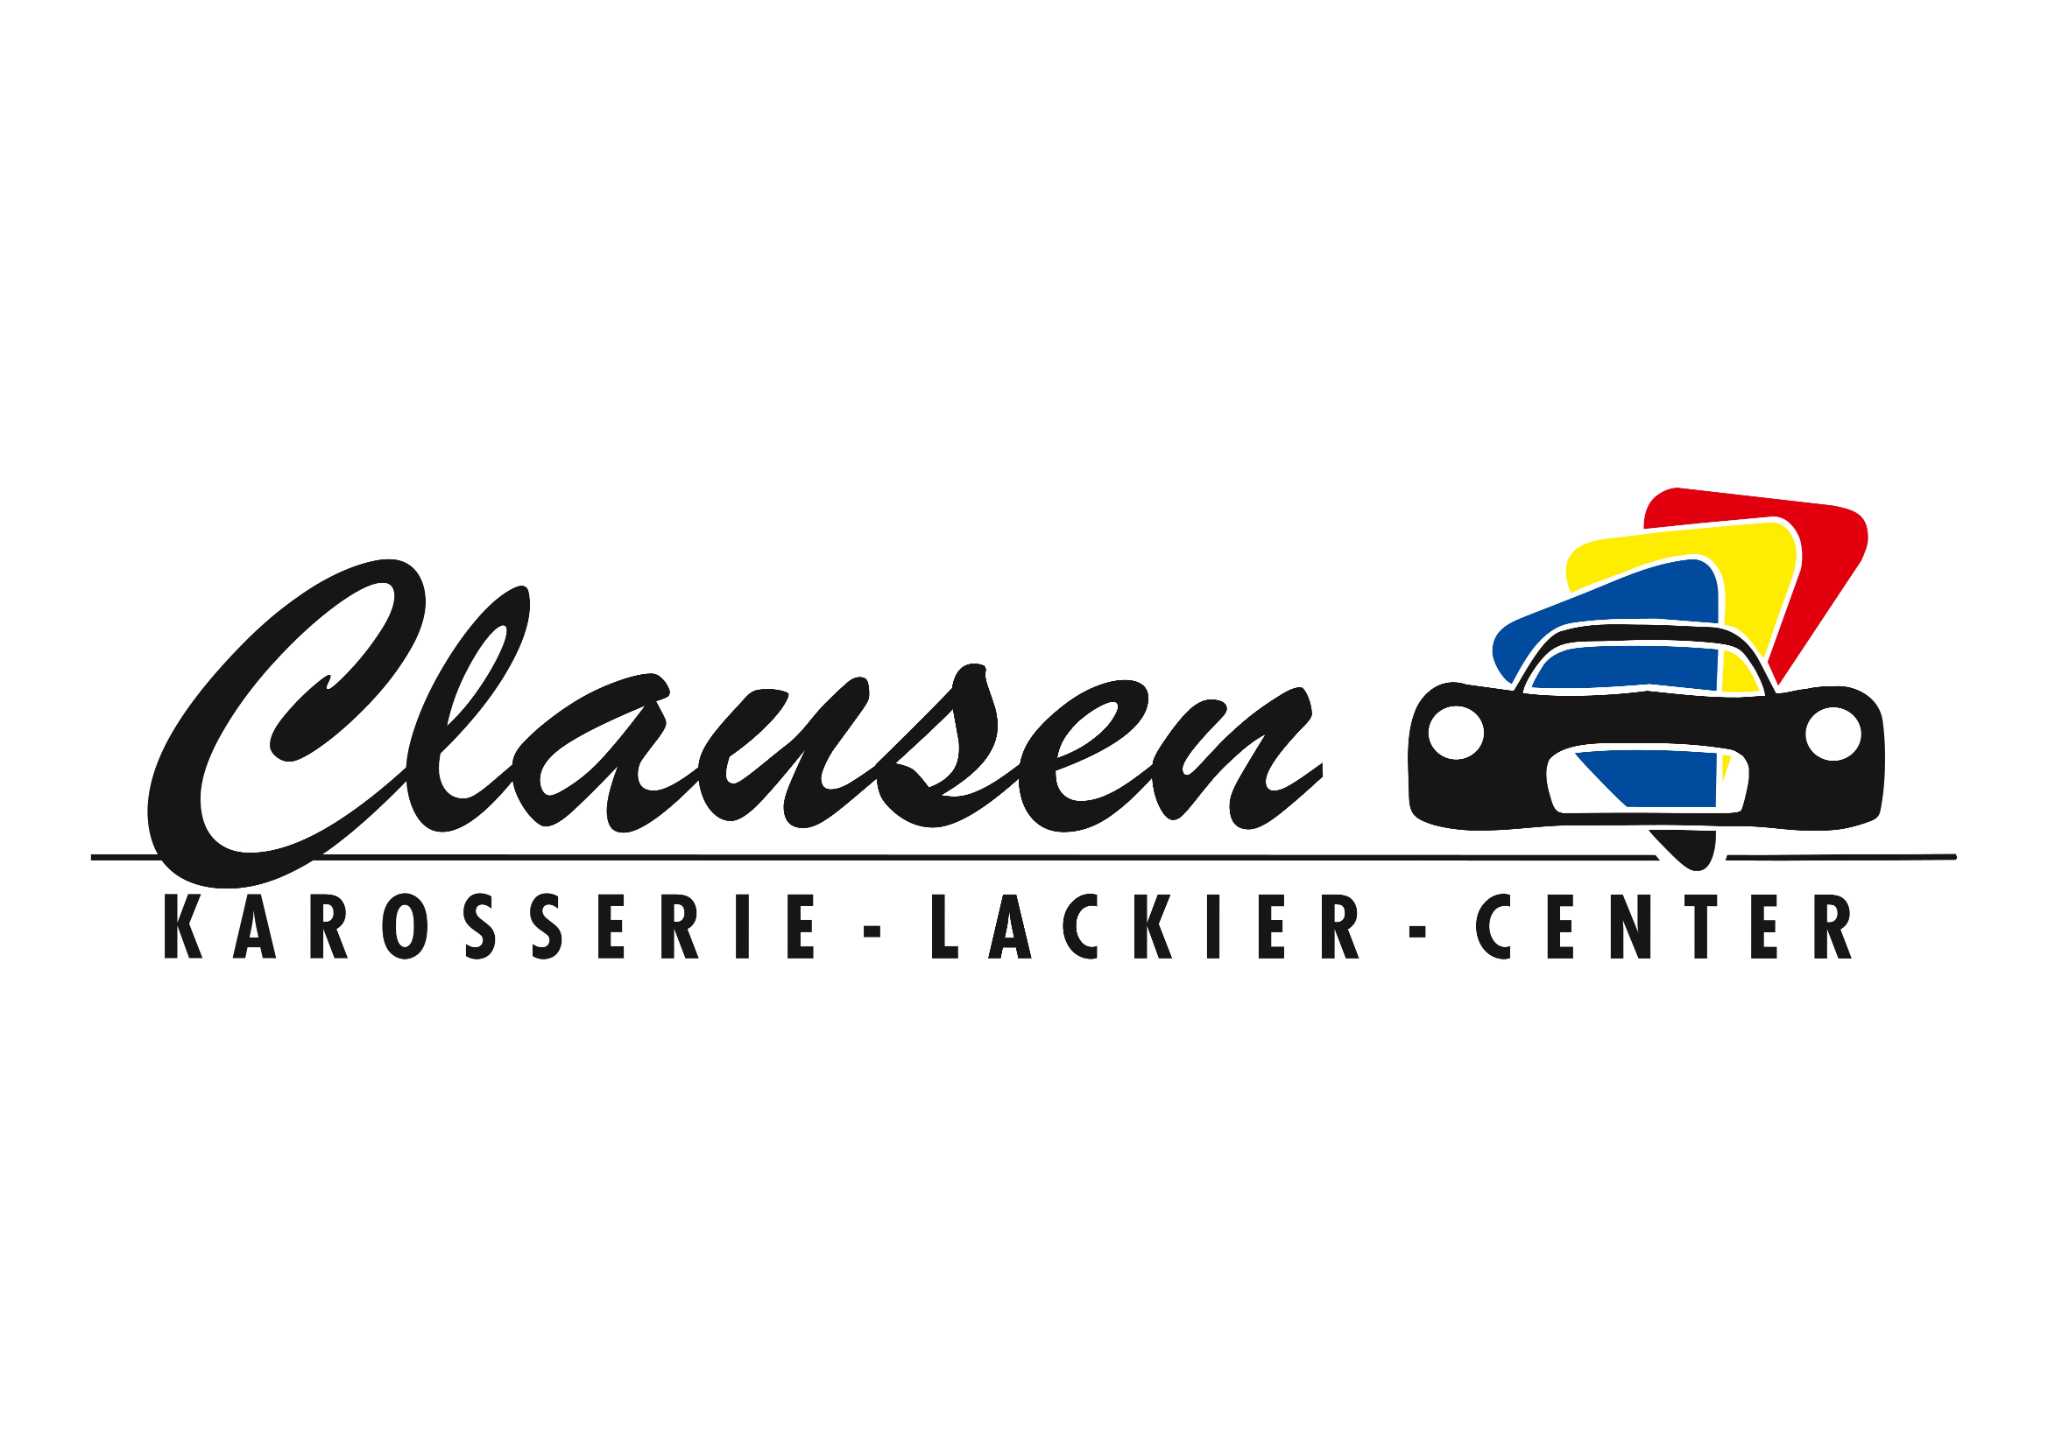 1Karosserie und Lackiercenter Clausen GmbH